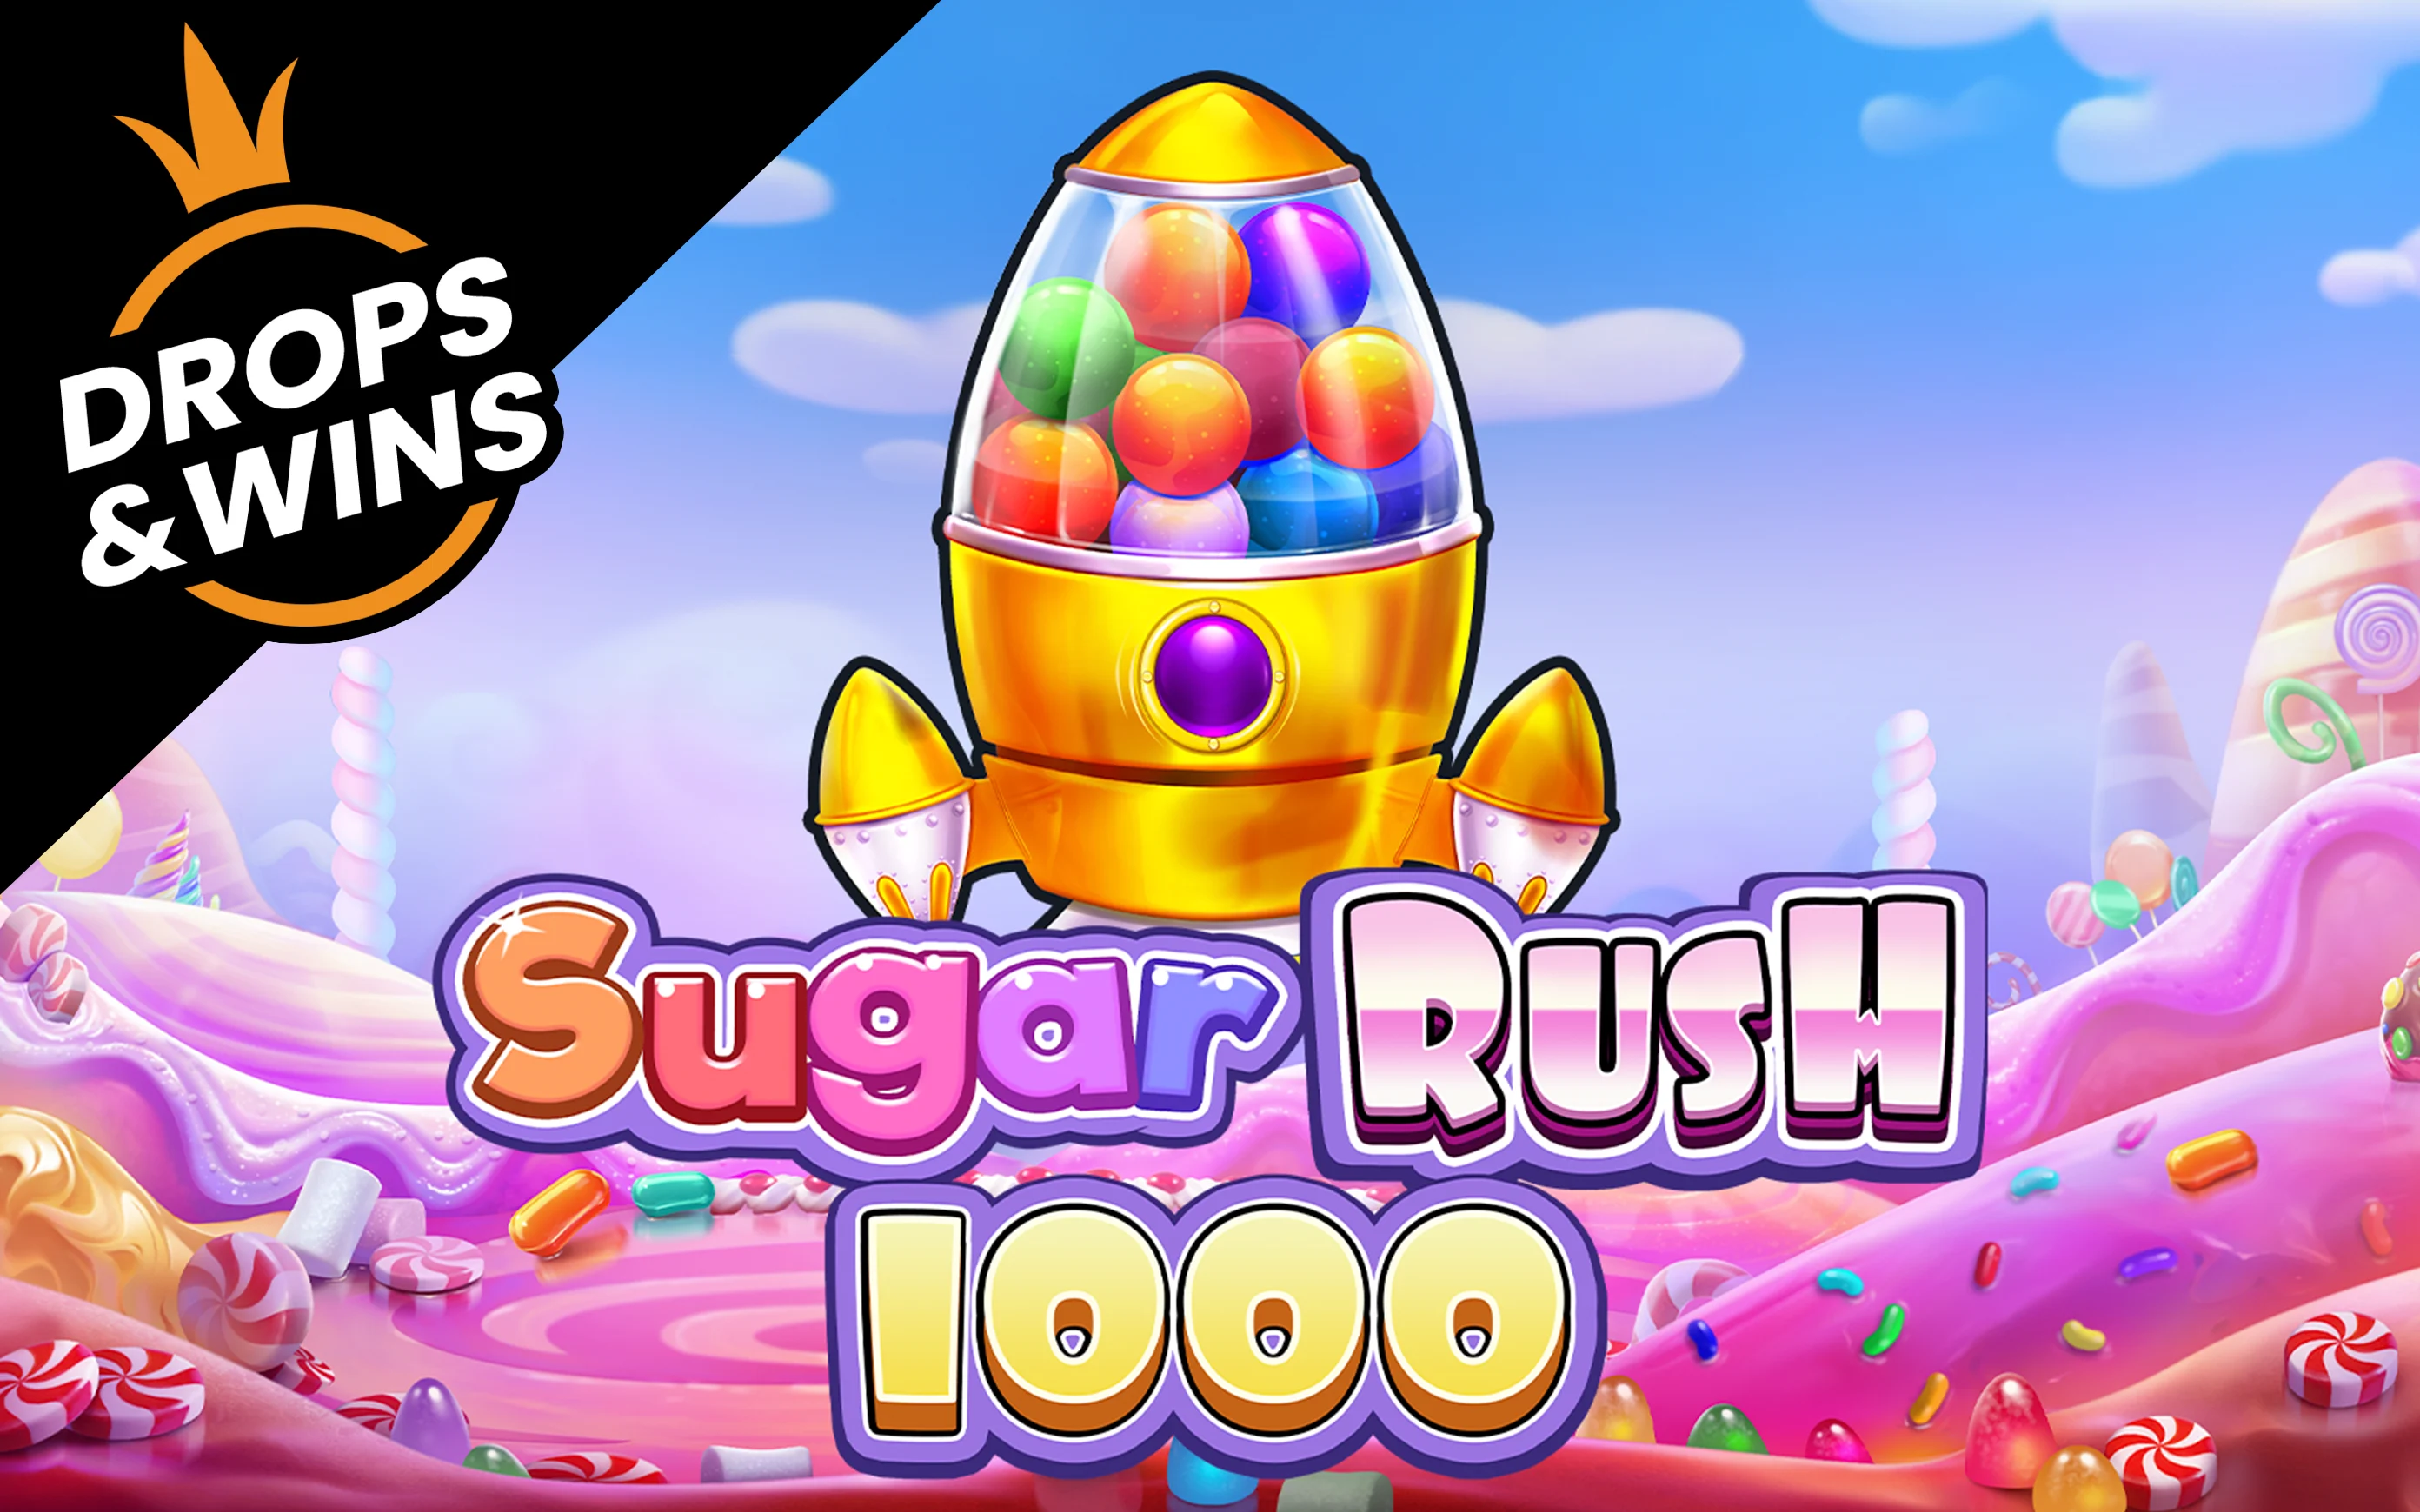 Speel Sugar Rush 1000 op Starcasino.be online casino